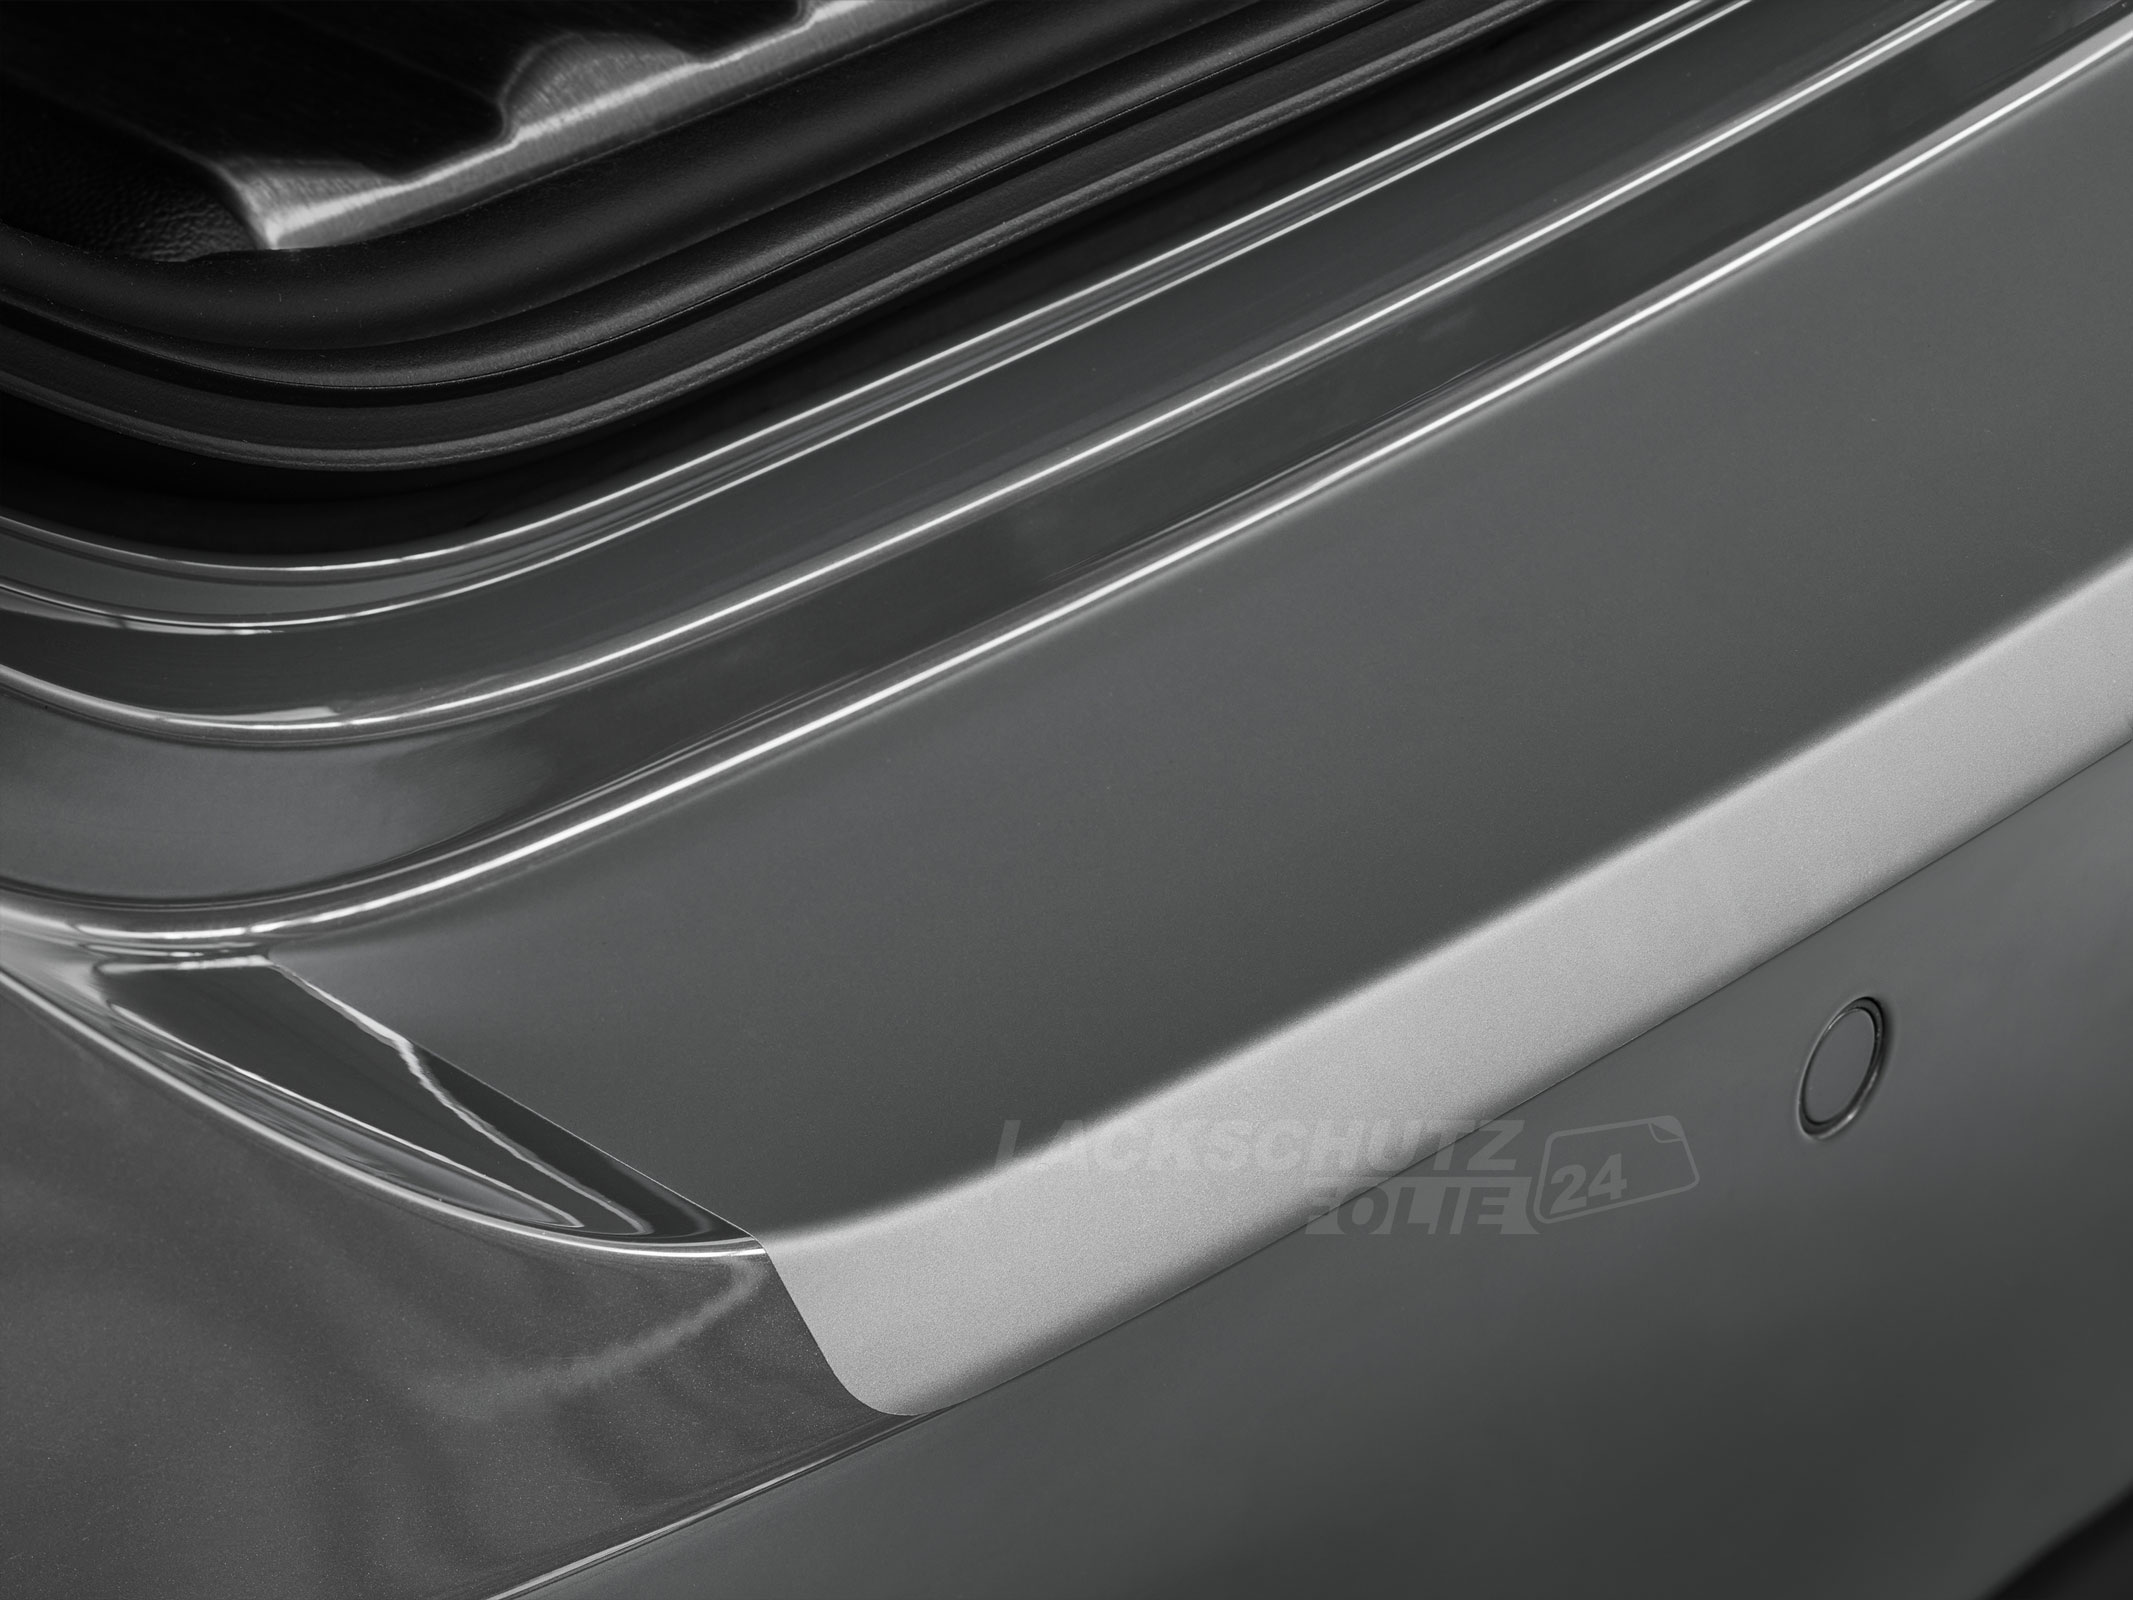 Ladekantenschutzfolie - Transparent Glatt MATT für Mazda CX-3 ab BJ 06/2015